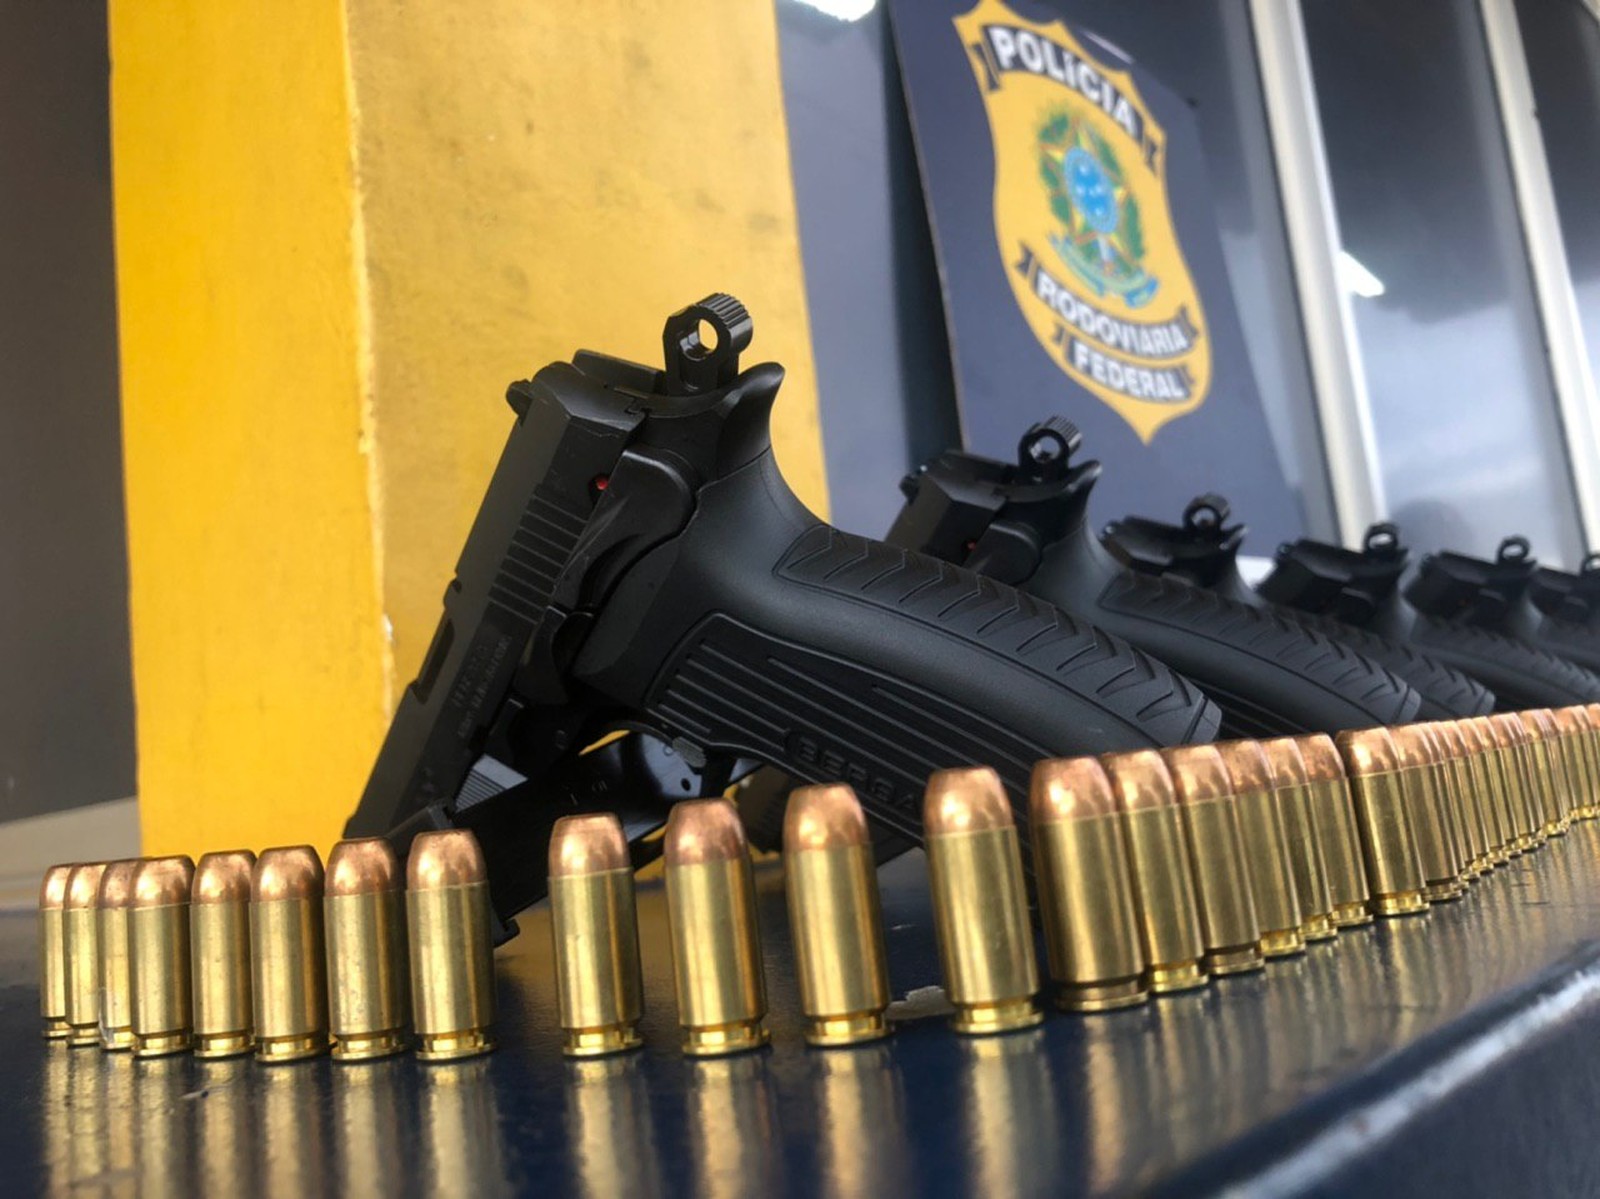 Homem é preso com 10 pistolas e 475 cartuchos de munição escondidos em painel de carro, diz PRF — Foto: Divulgação/PRF